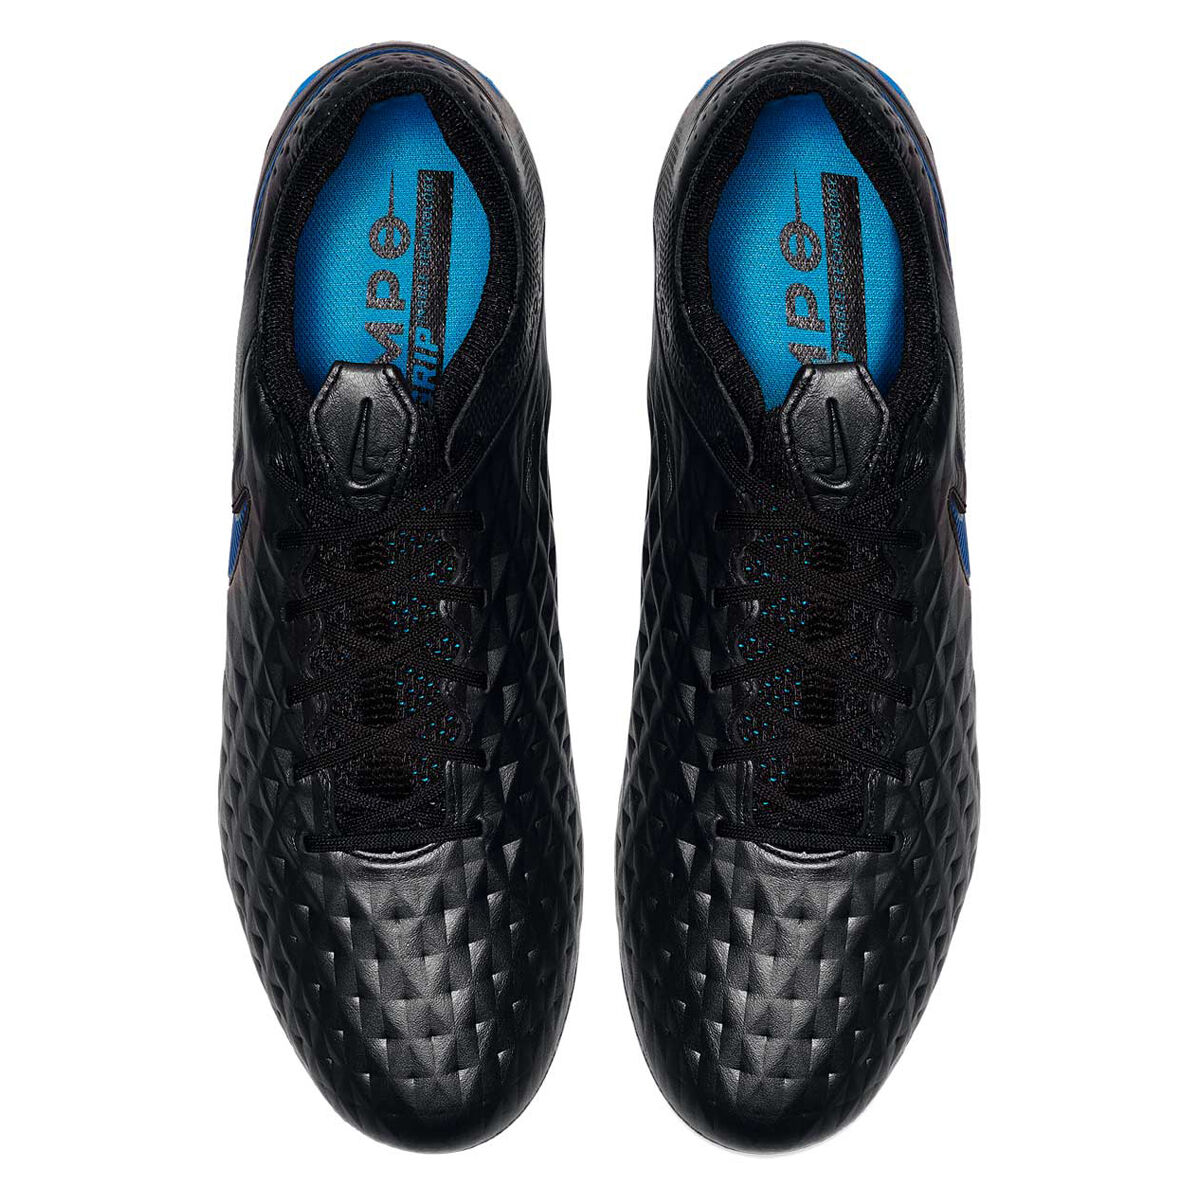 Nike TIEMPO LEGEND VIII ELITE FG Black Blue Versatile